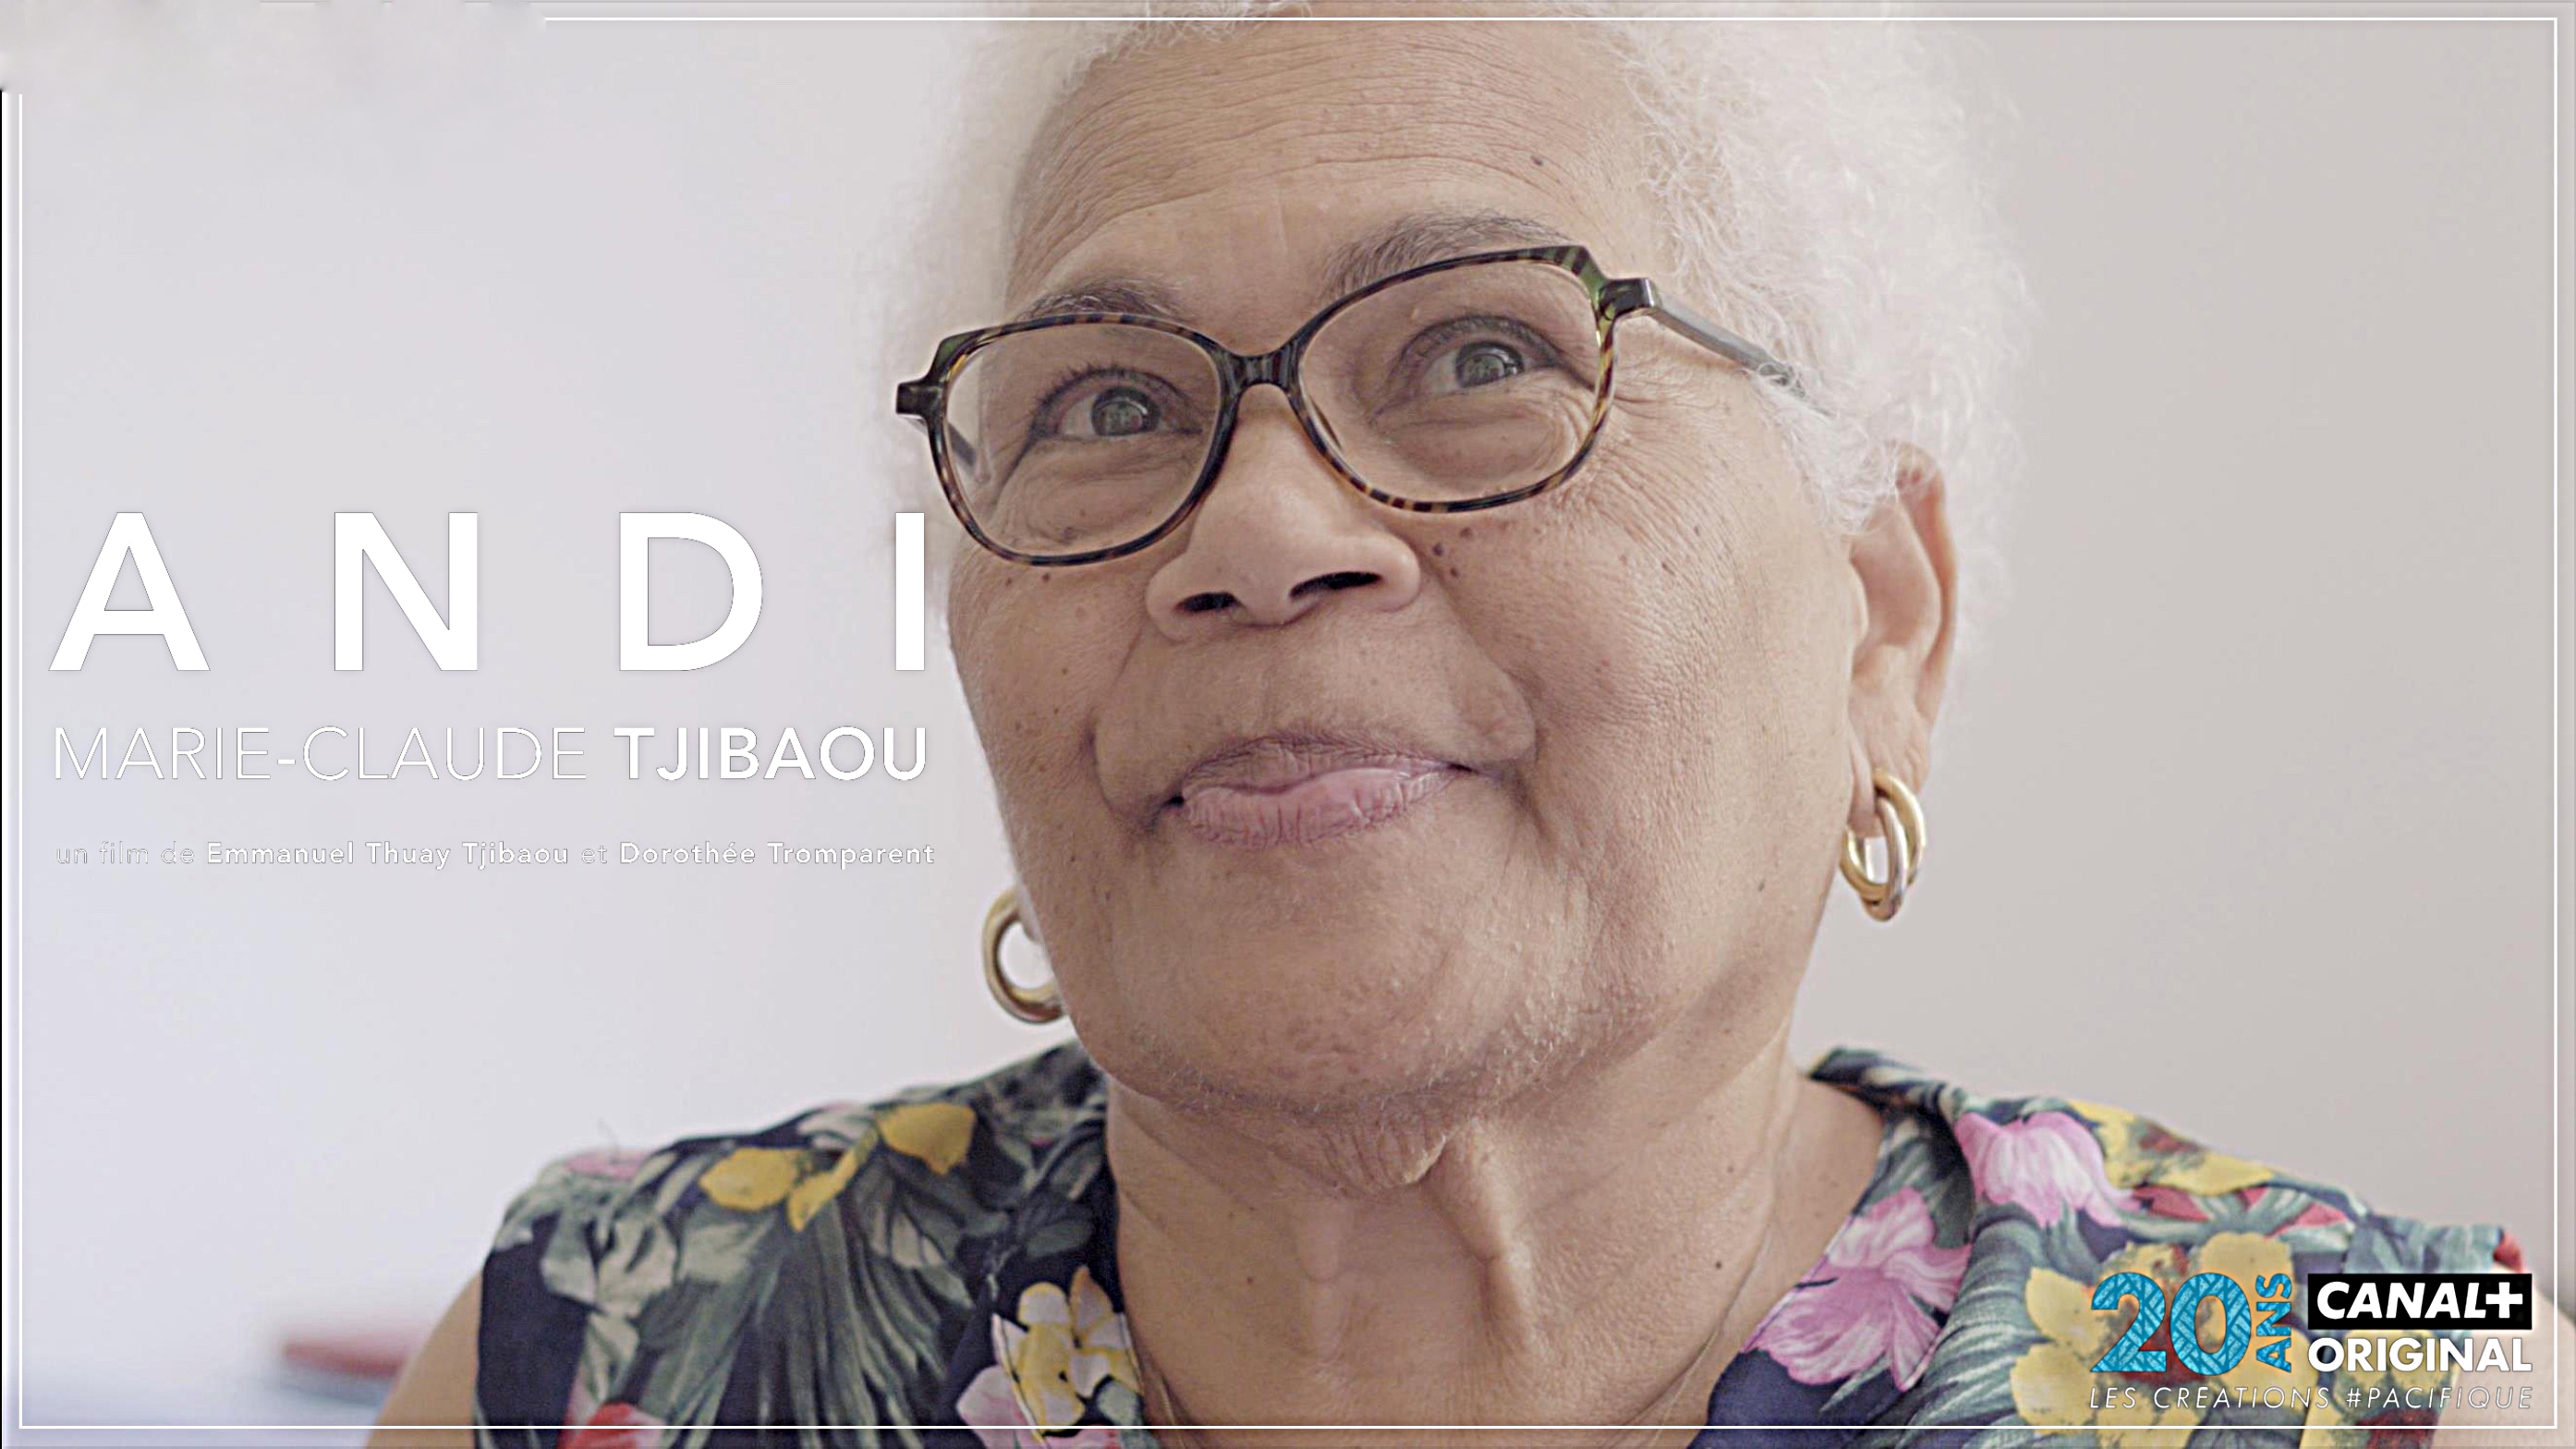 Marie-Claude Tjibaou "Andi" à l'honneur dans un film documentaire biopic le 25 août sur Canal+ Calédonie